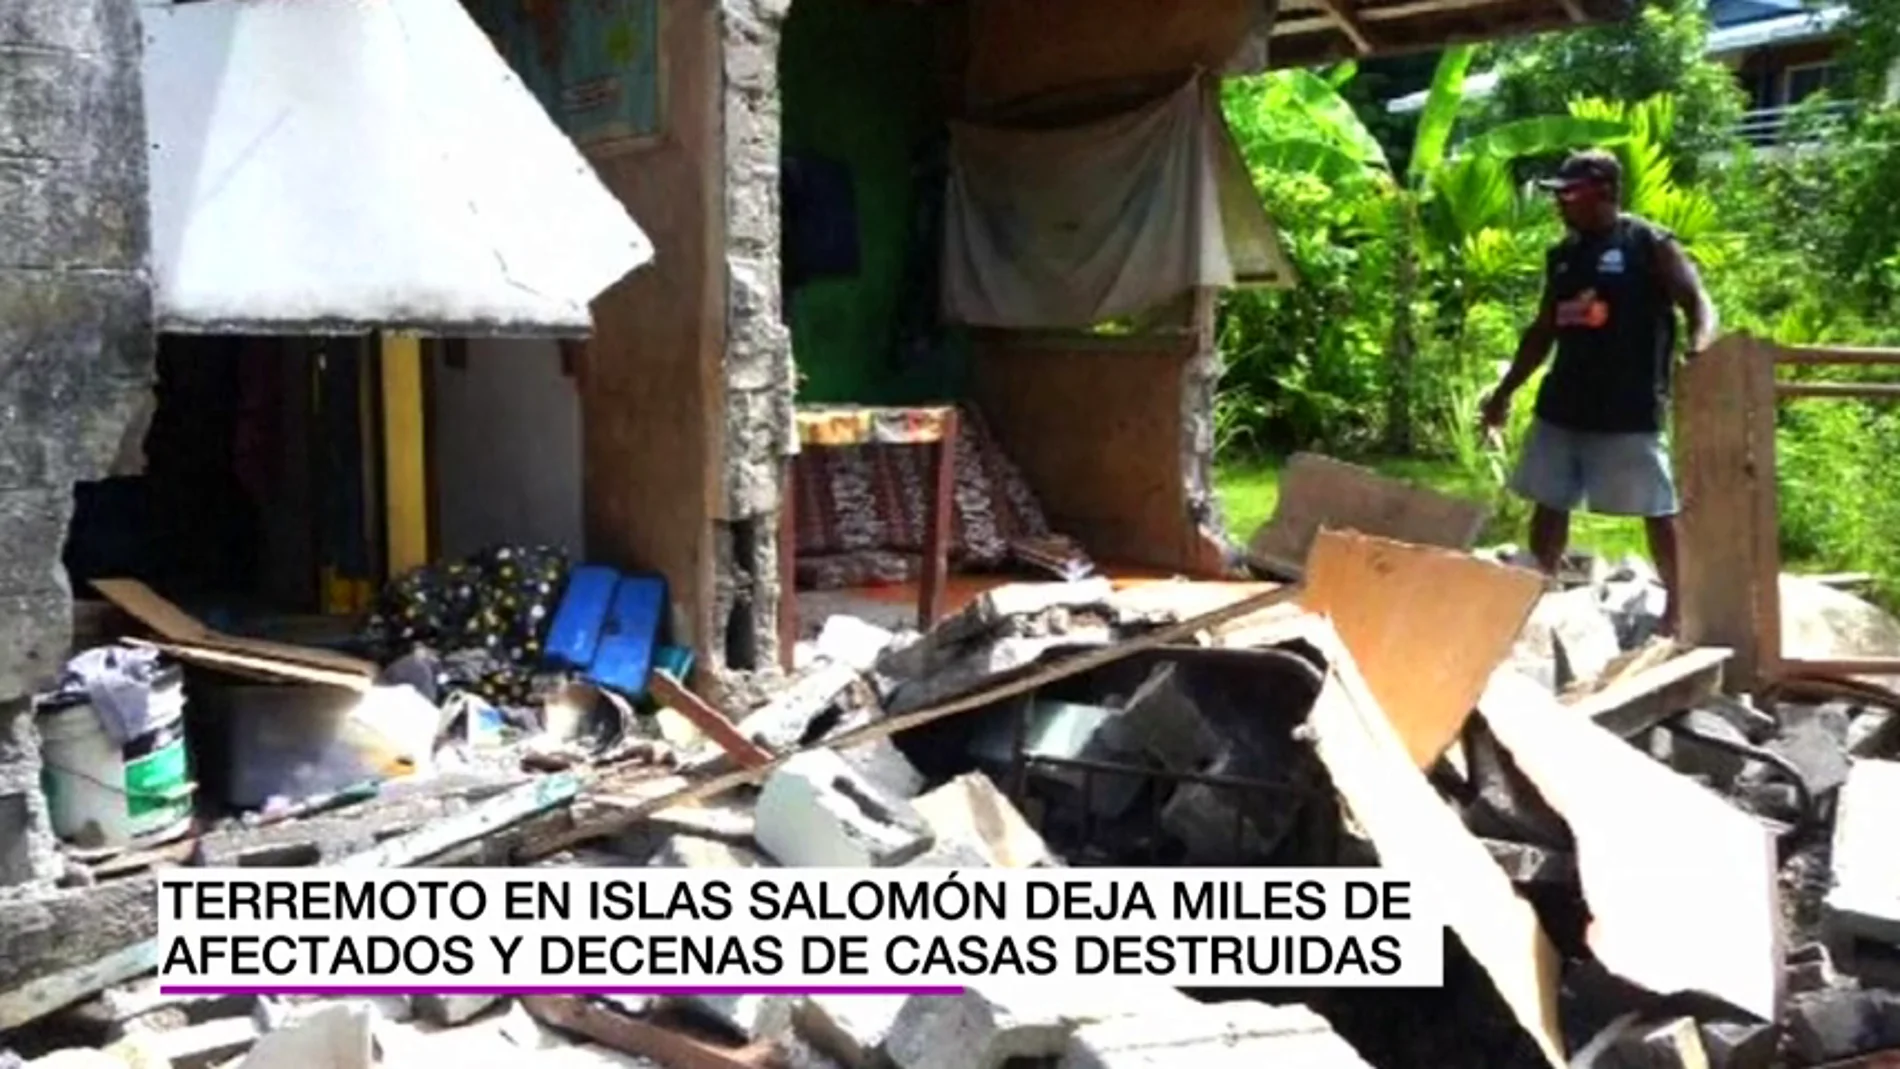 Frame 5.50239 de: Un terremoto de magnitud 7,8 en Islas Salomón destruye casas y deja miles de afectados